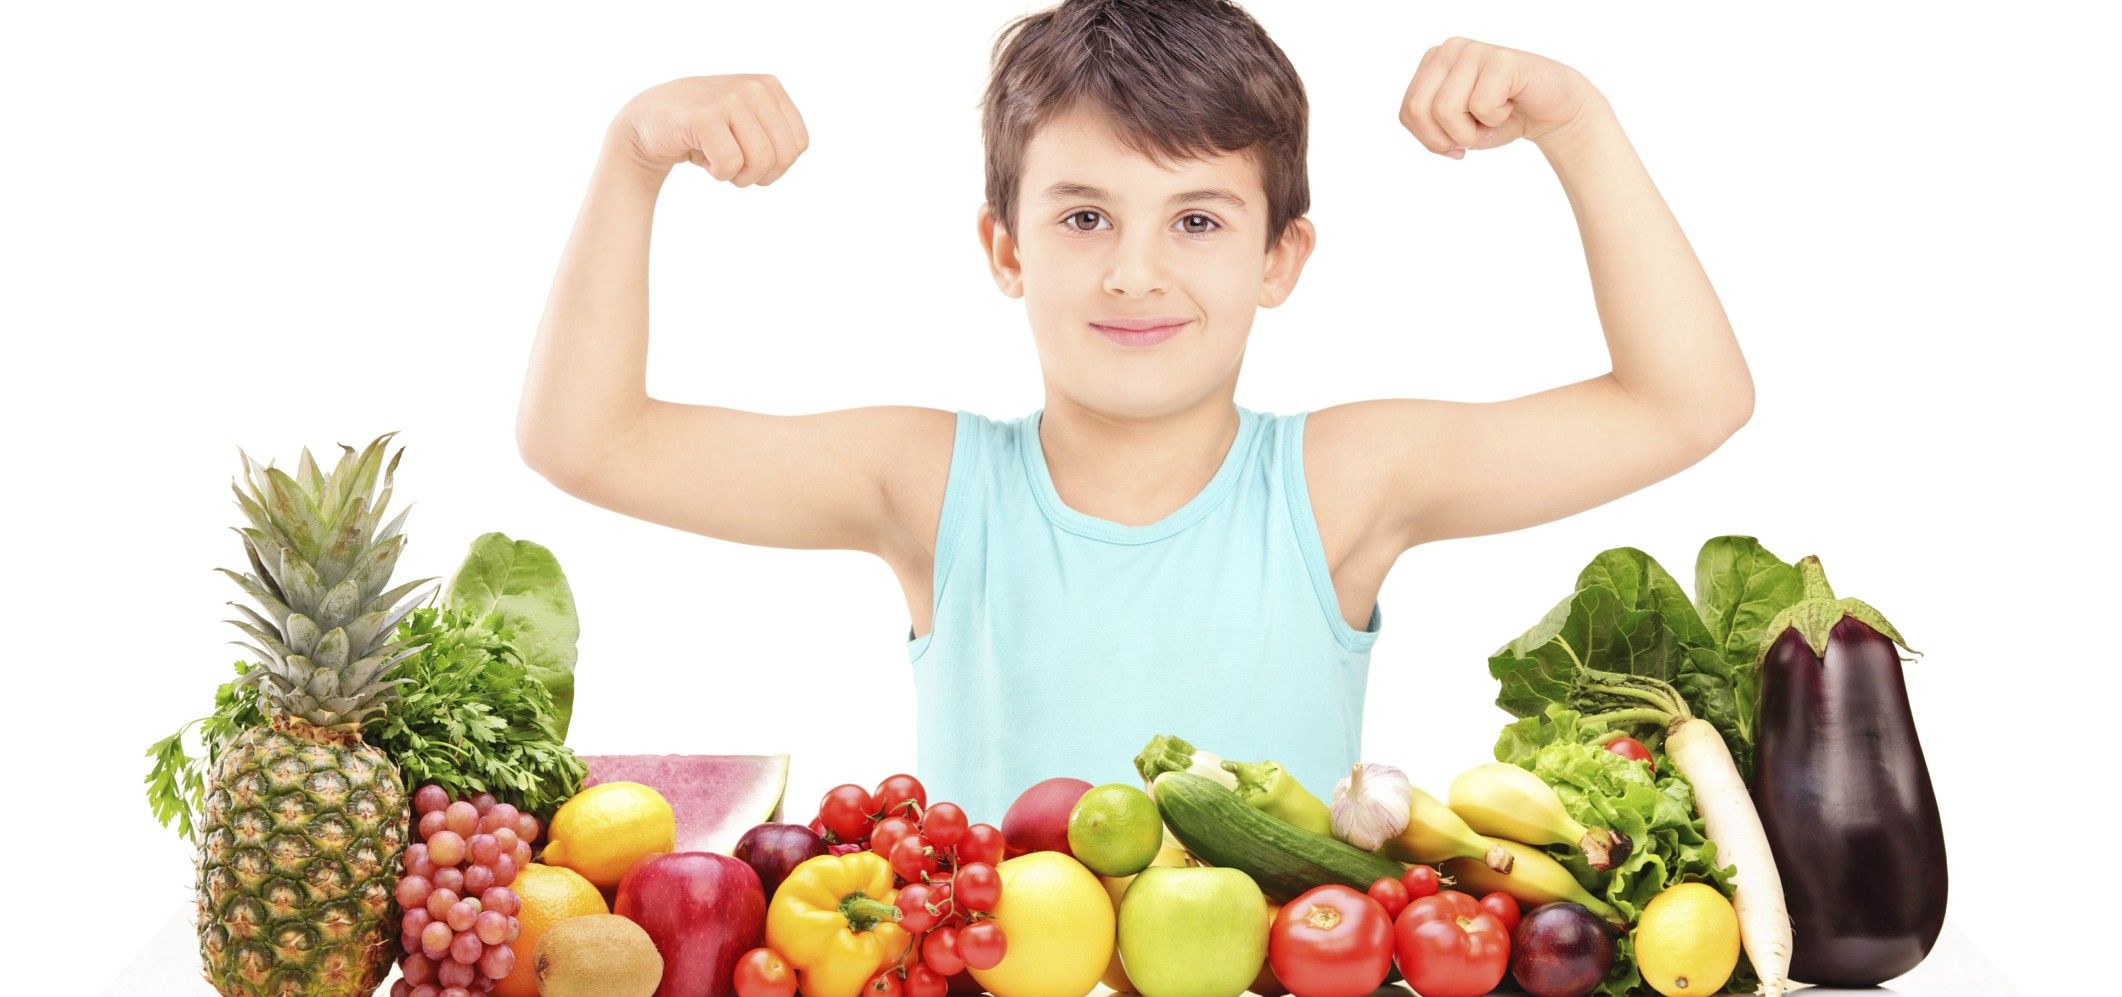 Alimentazione vegana per i bambini: è adeguata e promotrice di salute?